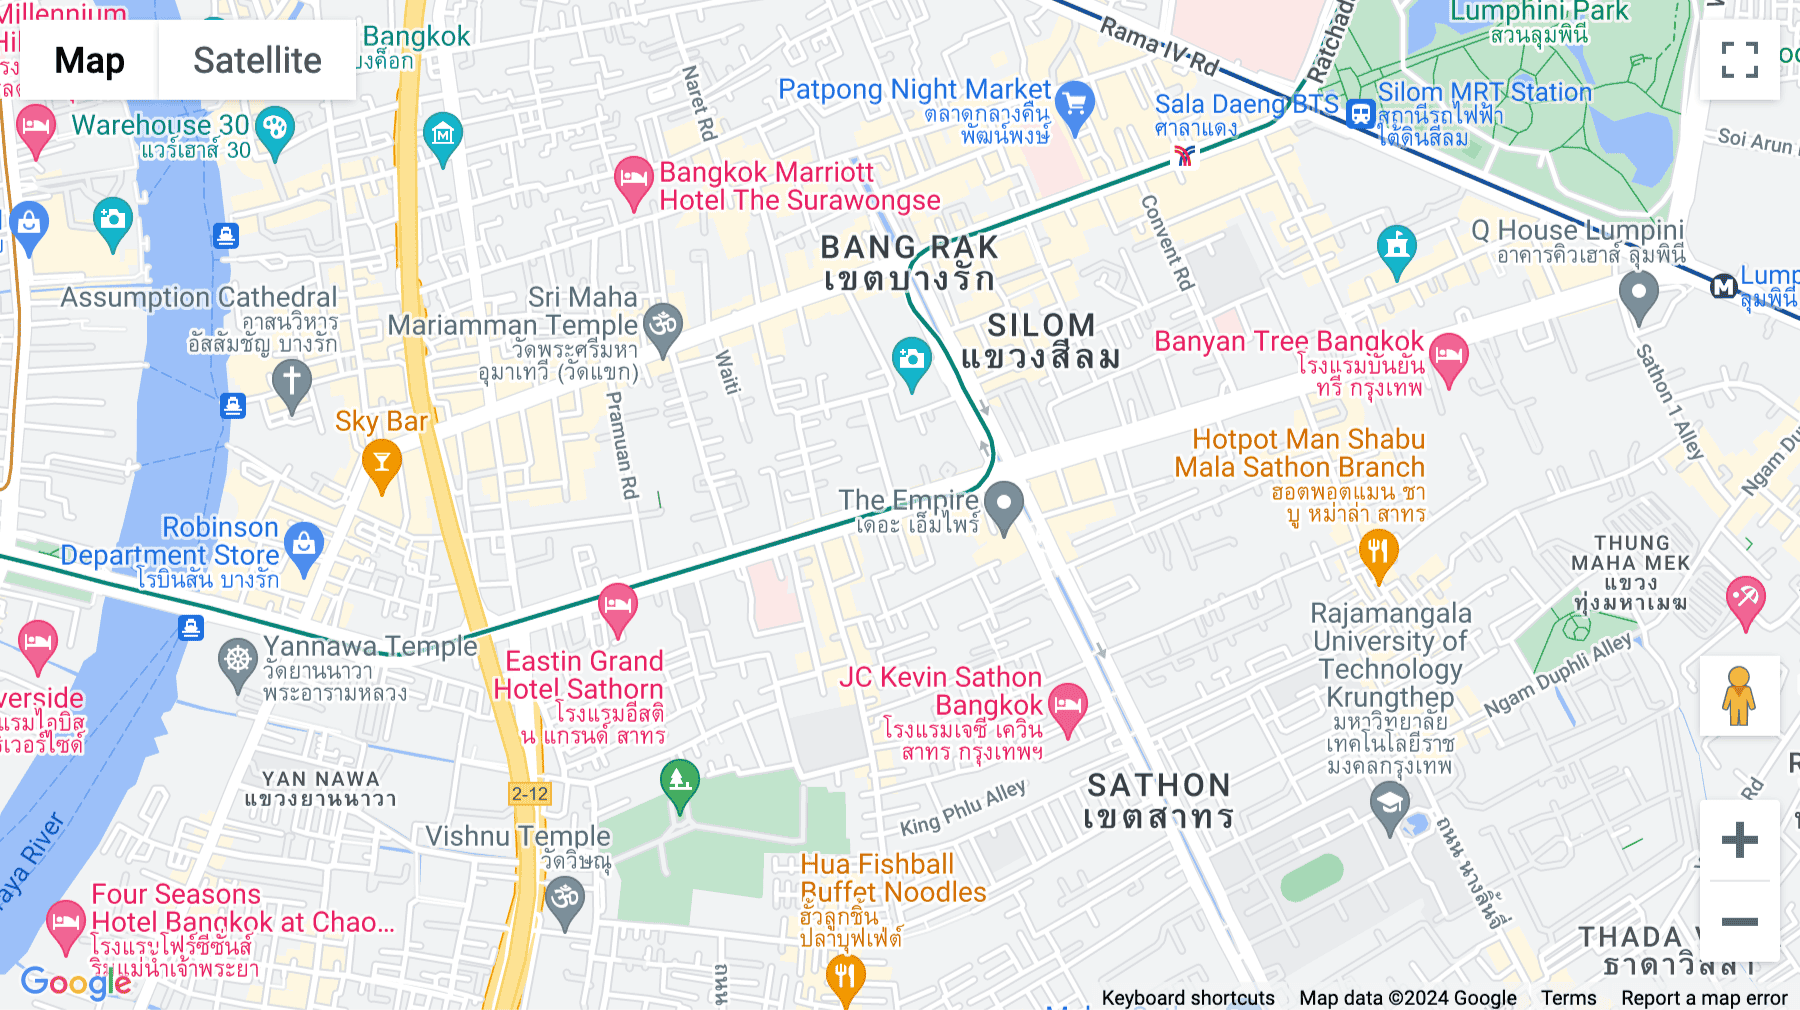 Click for interative map of Bangkok Sukhumvit Centre, 152 Chartered Square Building 30/F, Room 30-01, North Sathorn Road, Bangkok